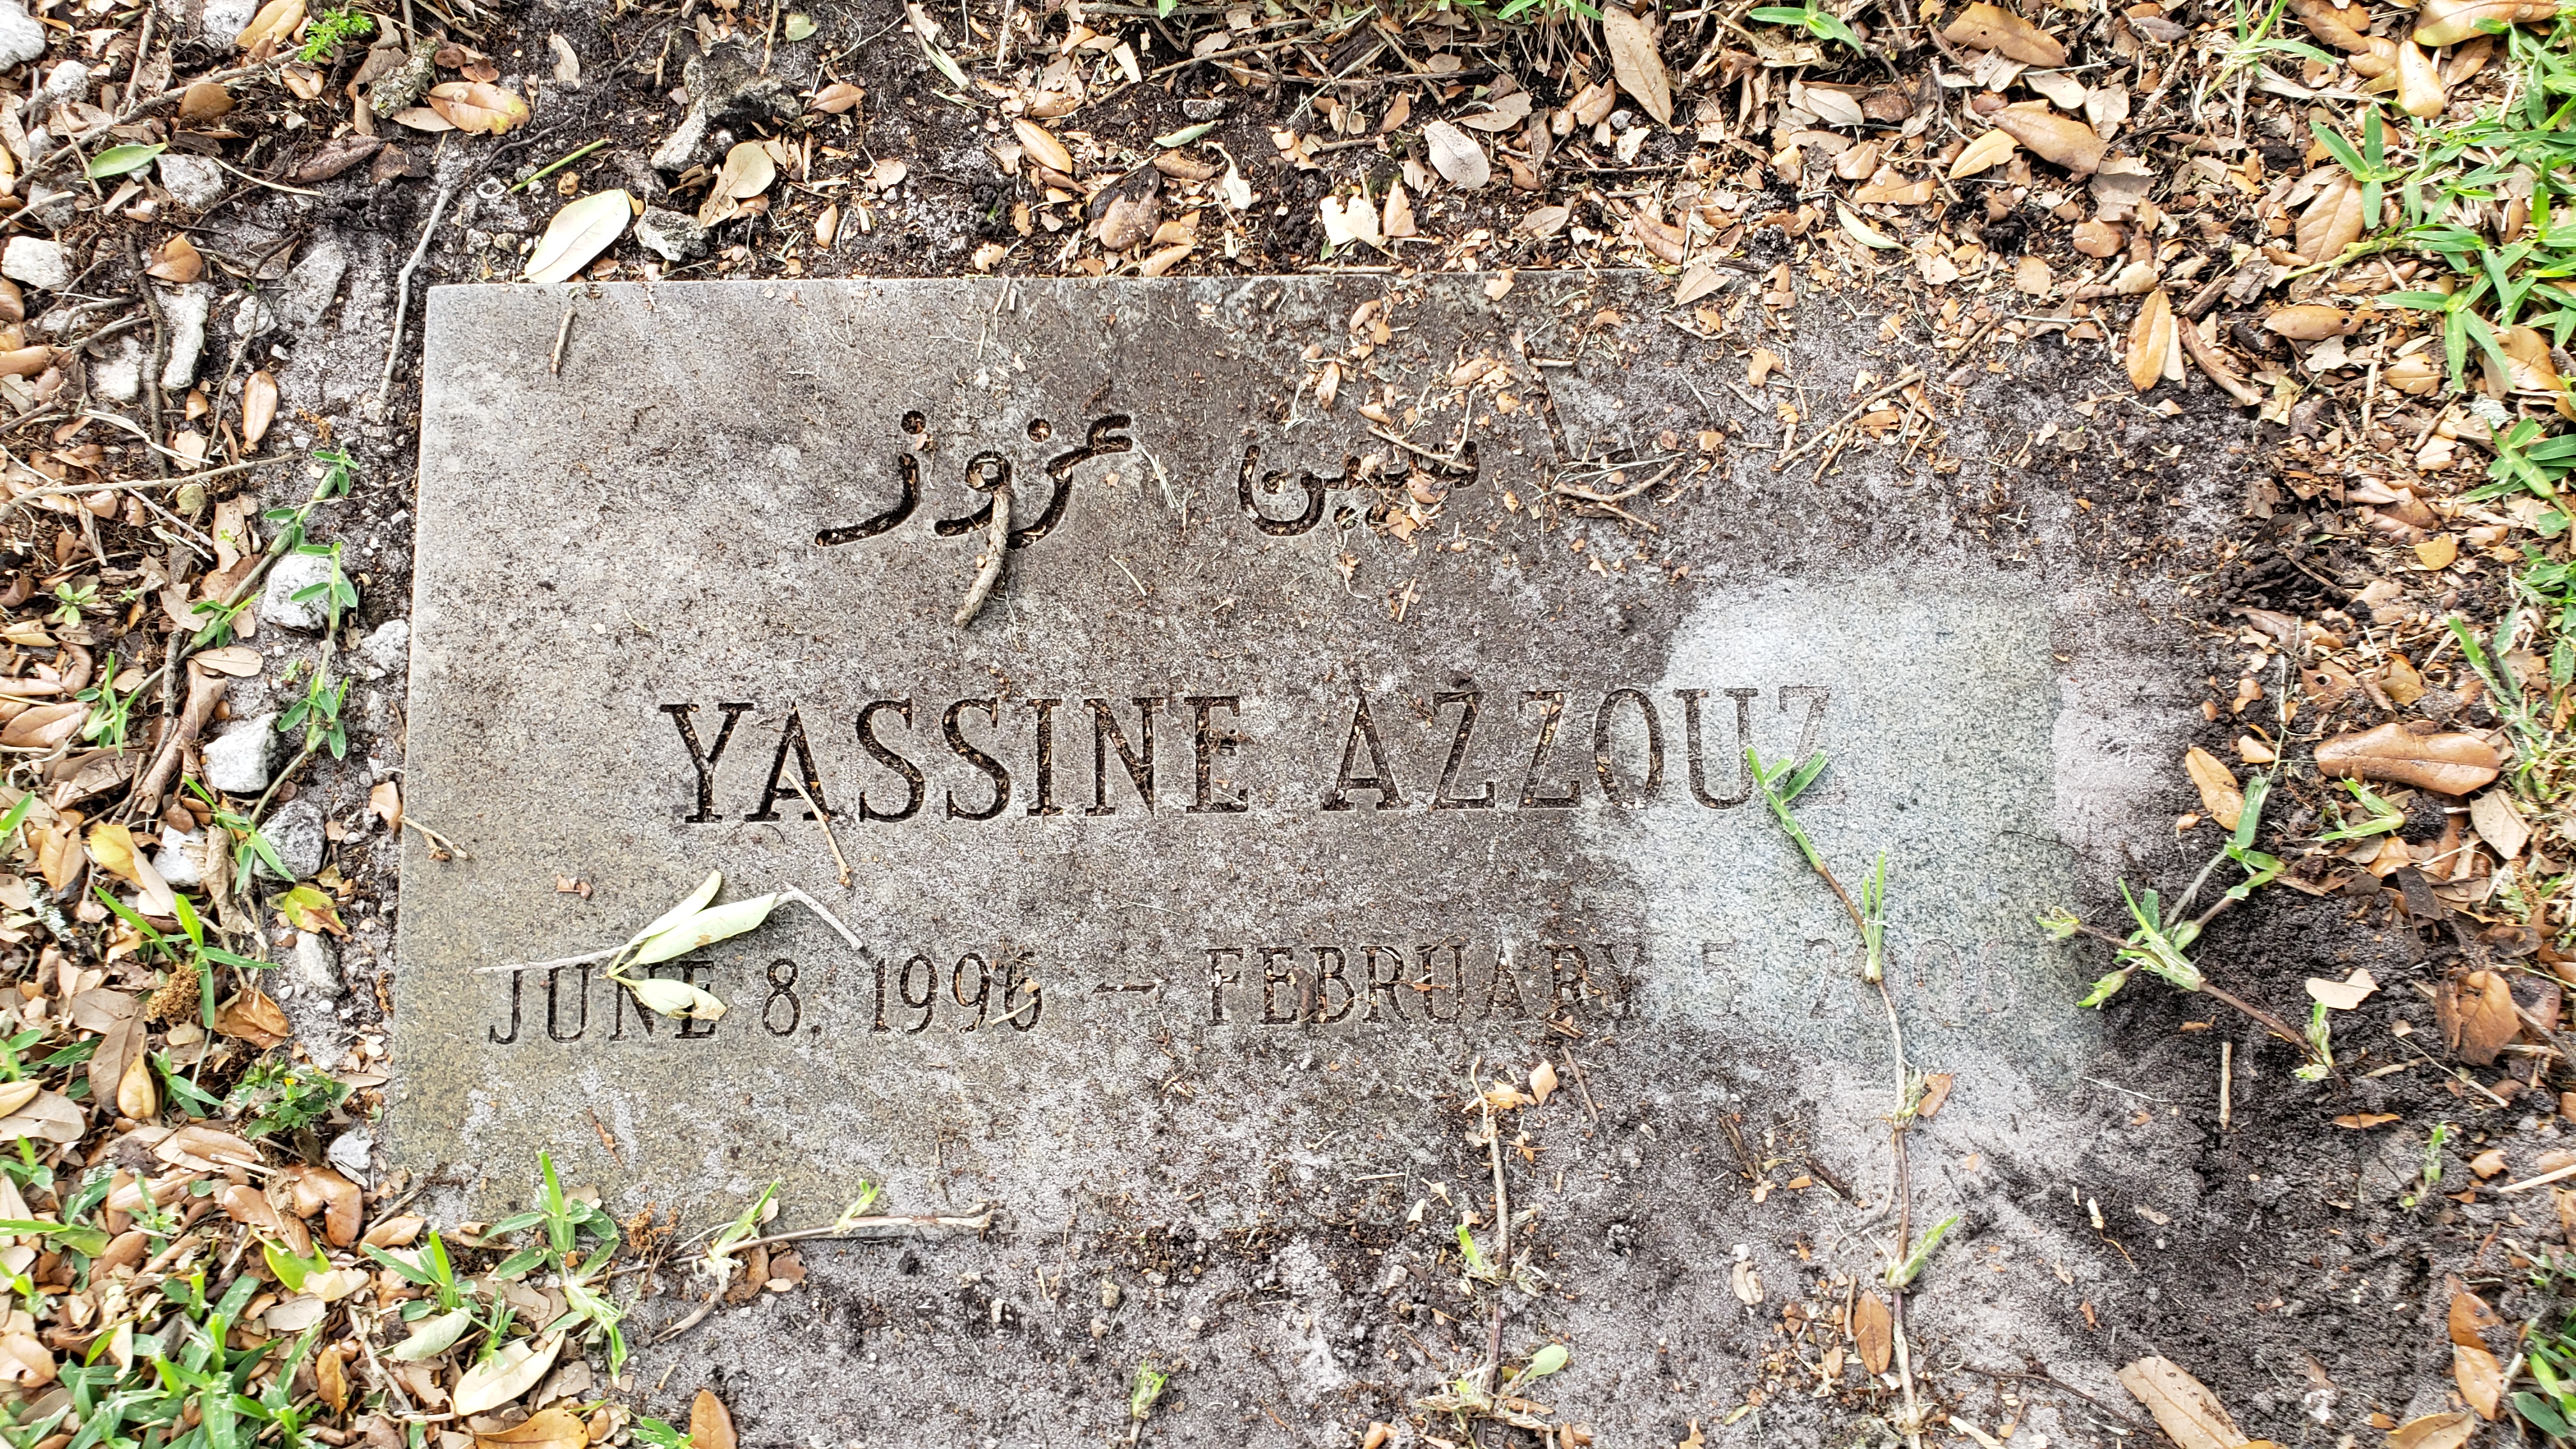 Yassine Azzouz